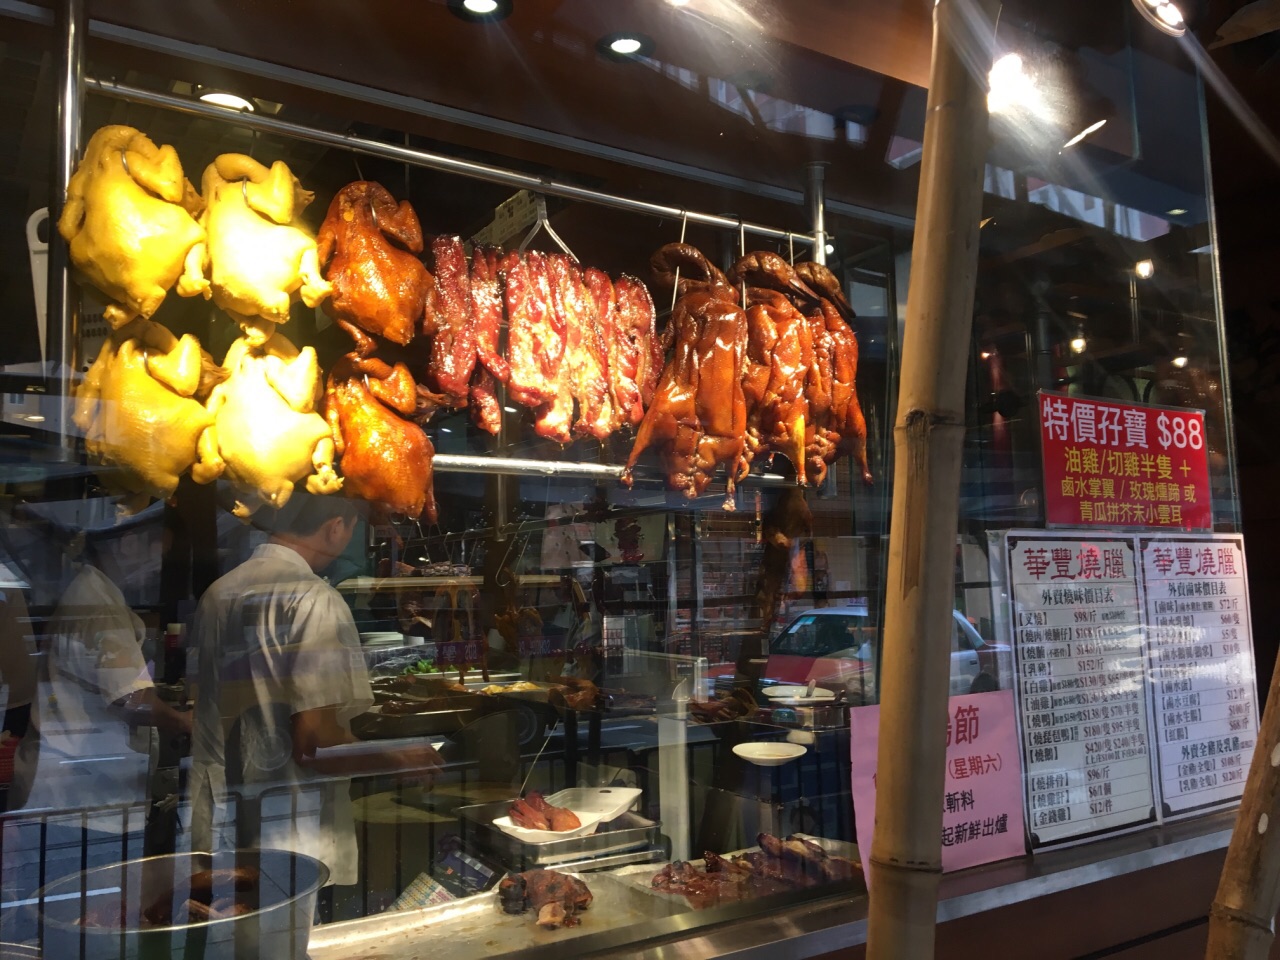 华丰烧腊是香港非常知名的烧腊专家了,中环那家店装修的风格相当的